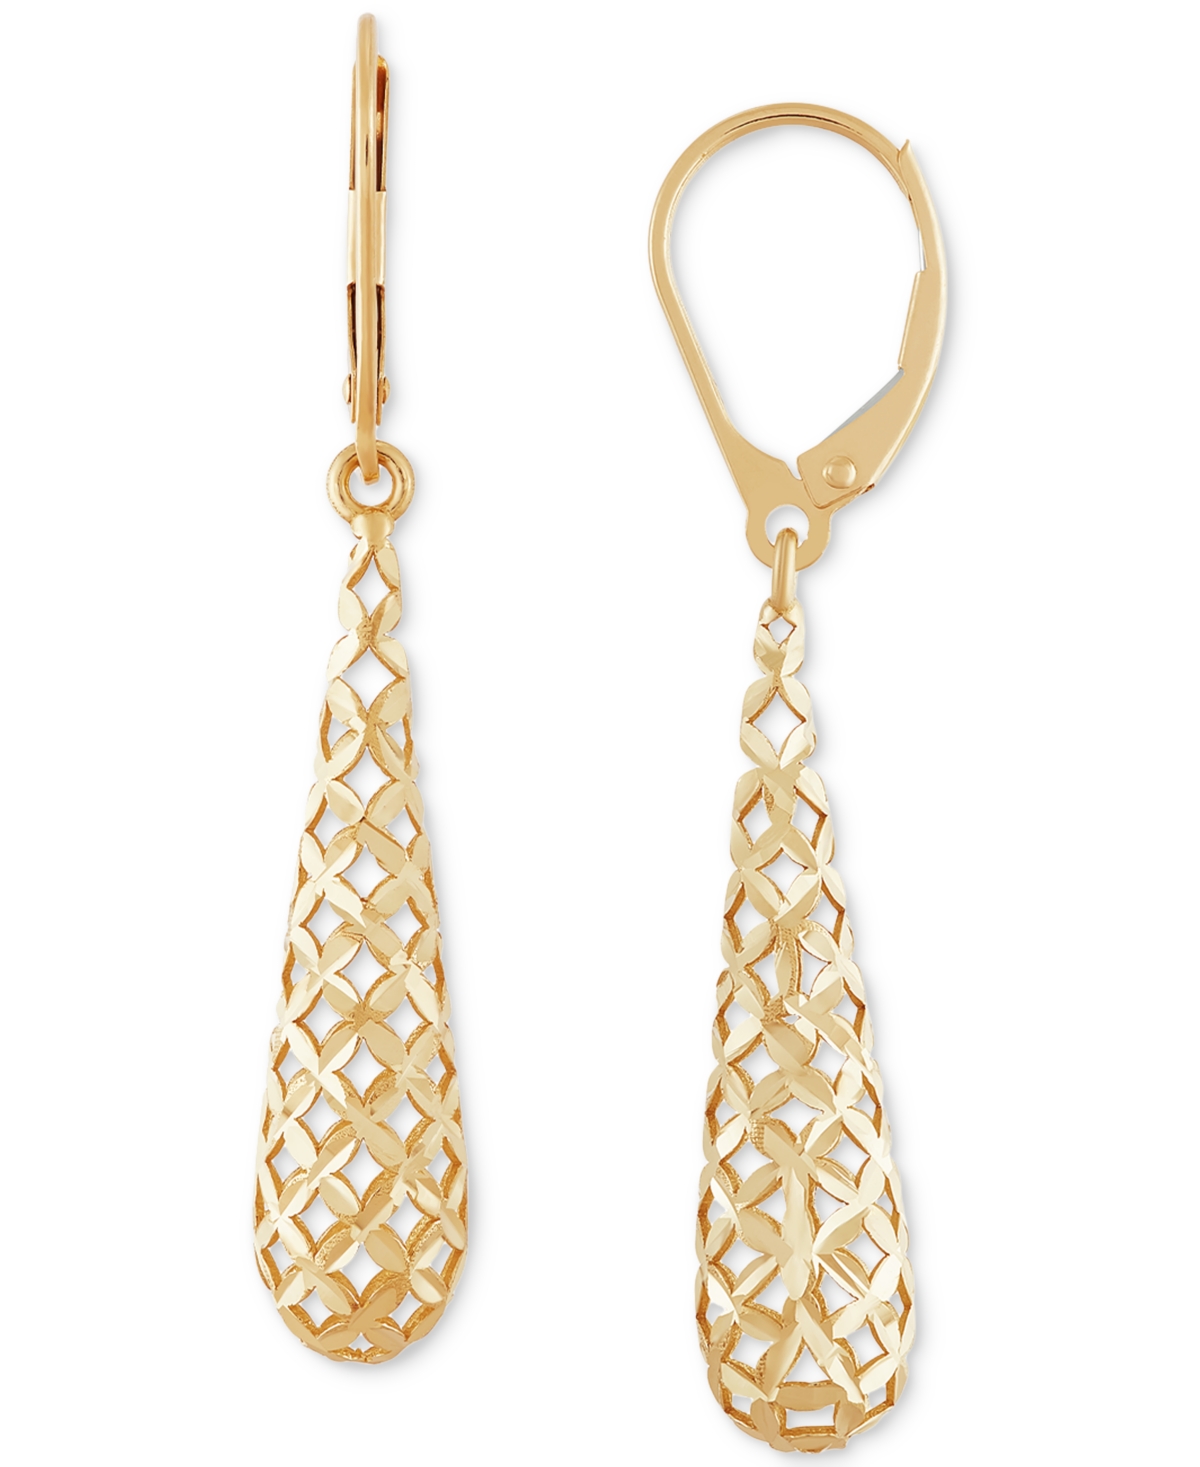 Italian Gold Lattice Work Elongated Teardrop Leverback Drop Earrings In 10k Gold